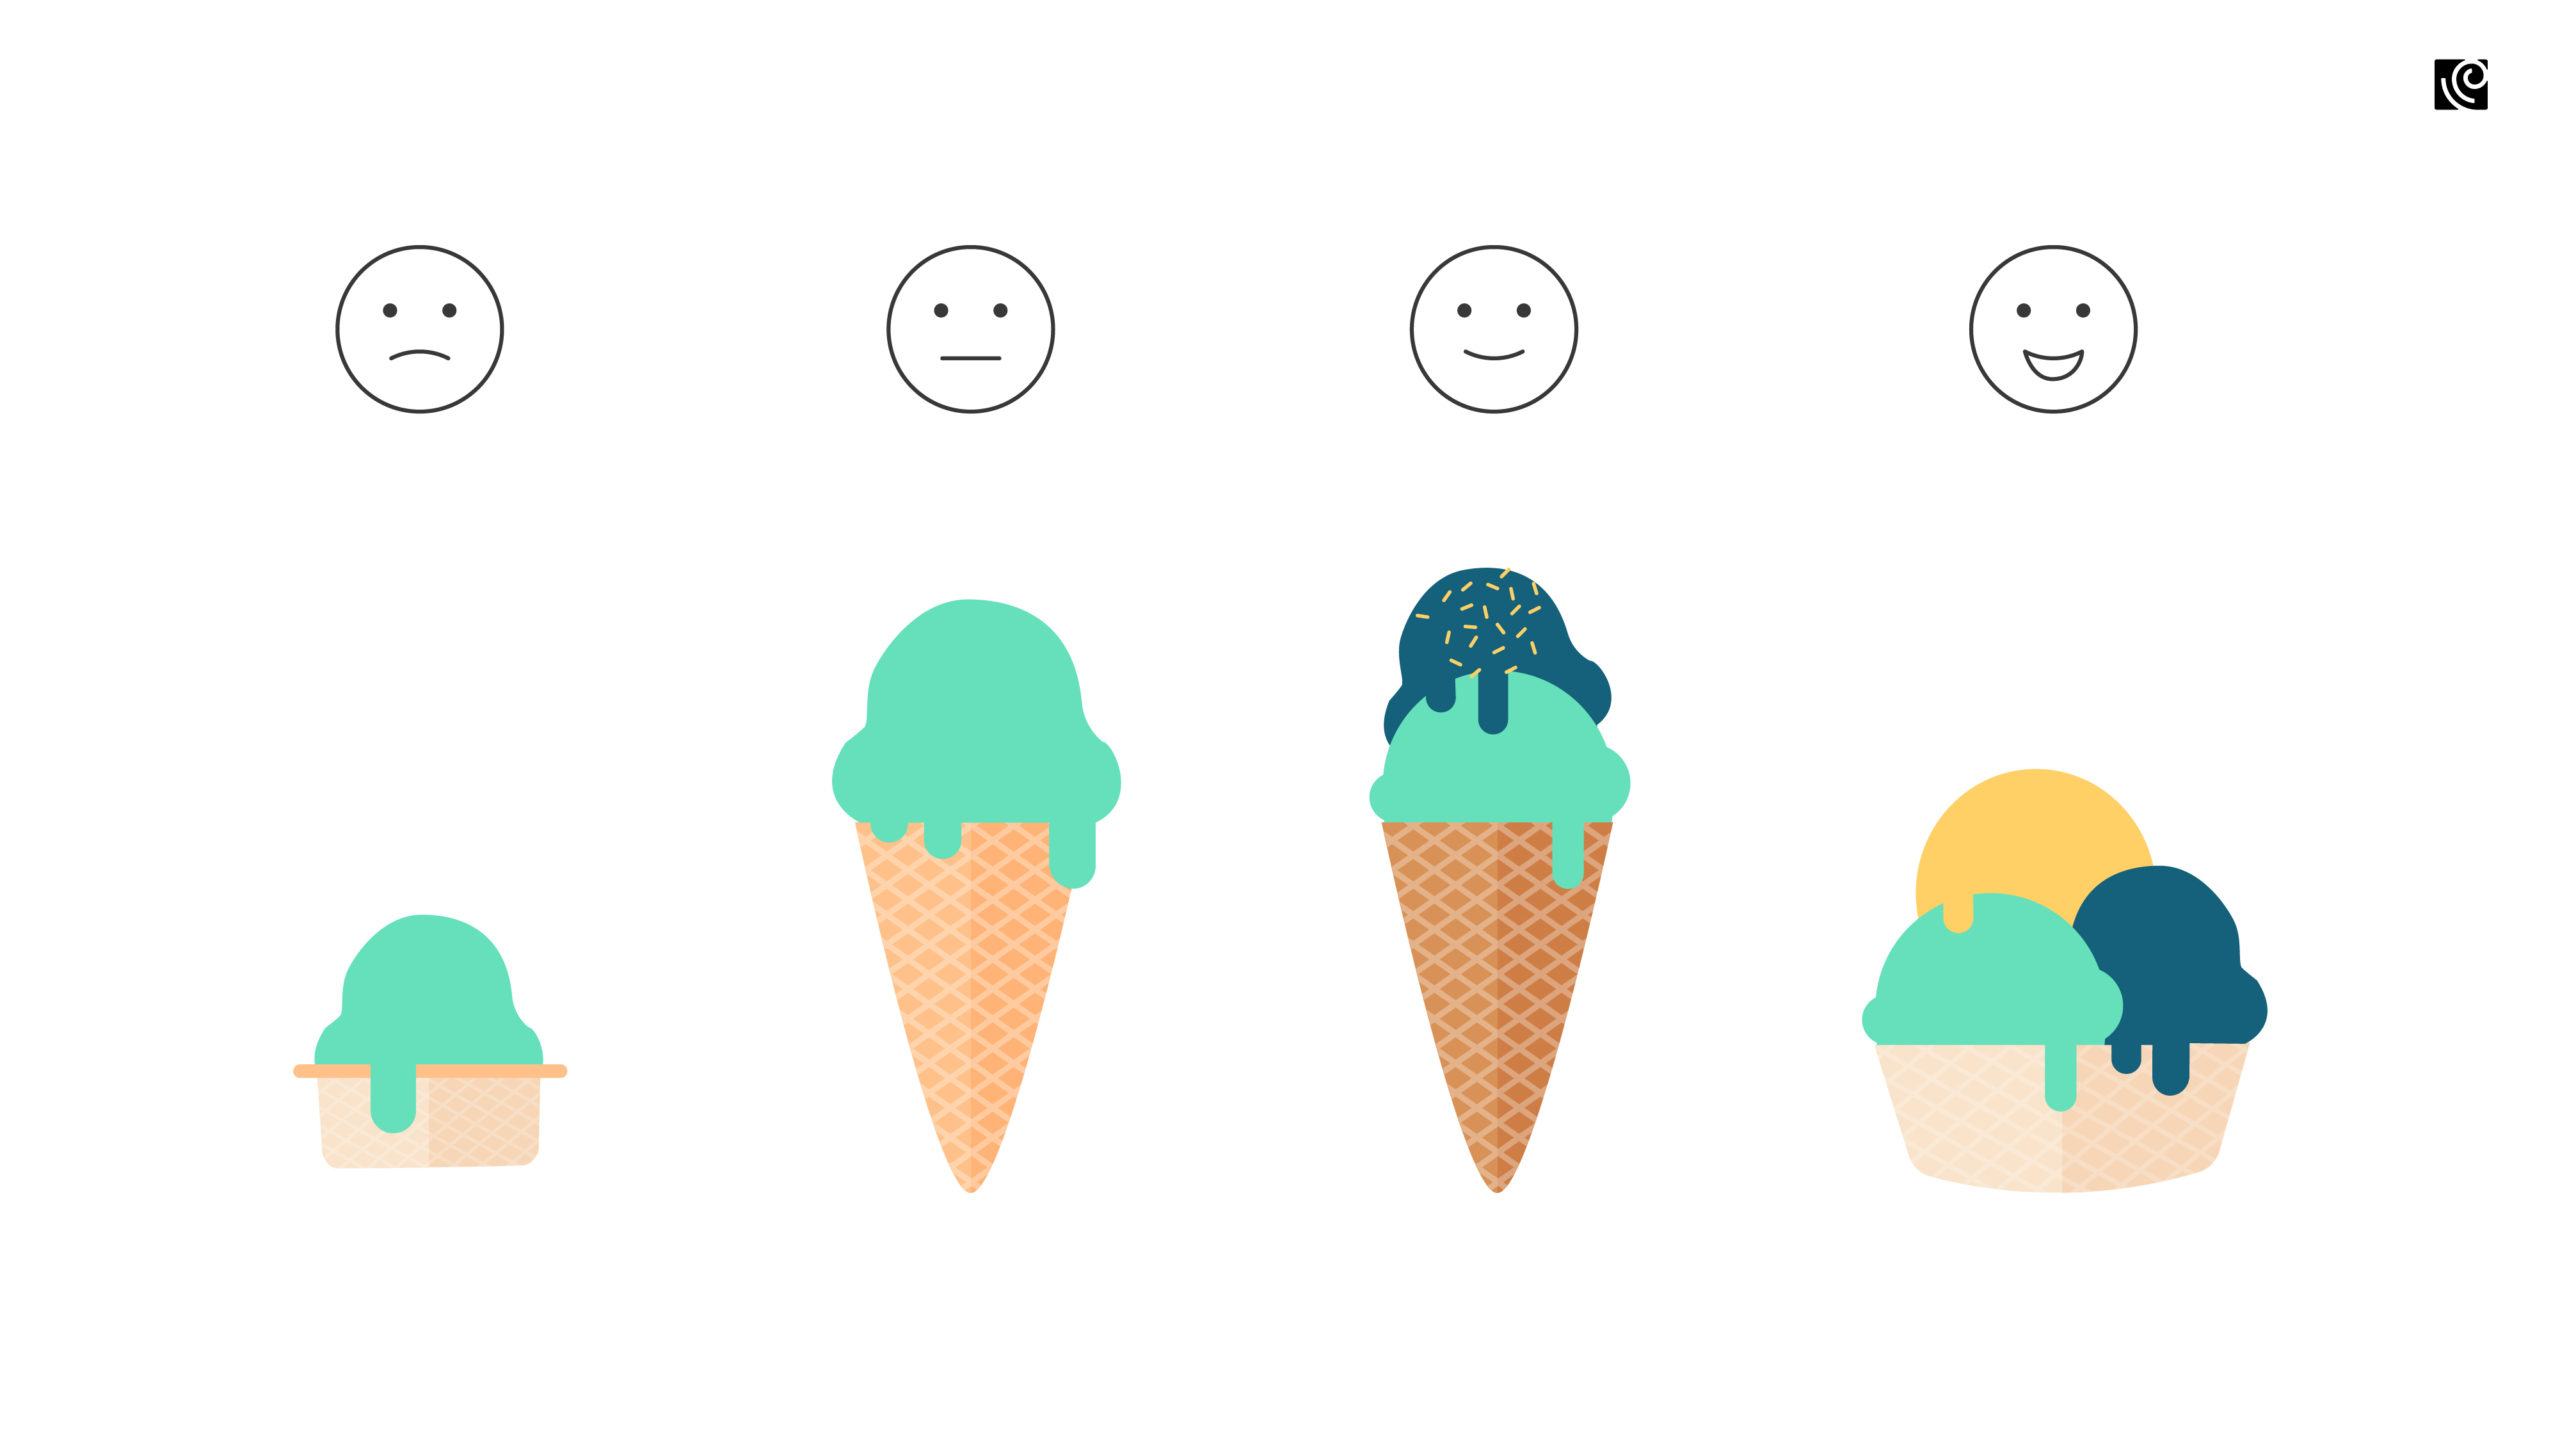 Icecream with emoji